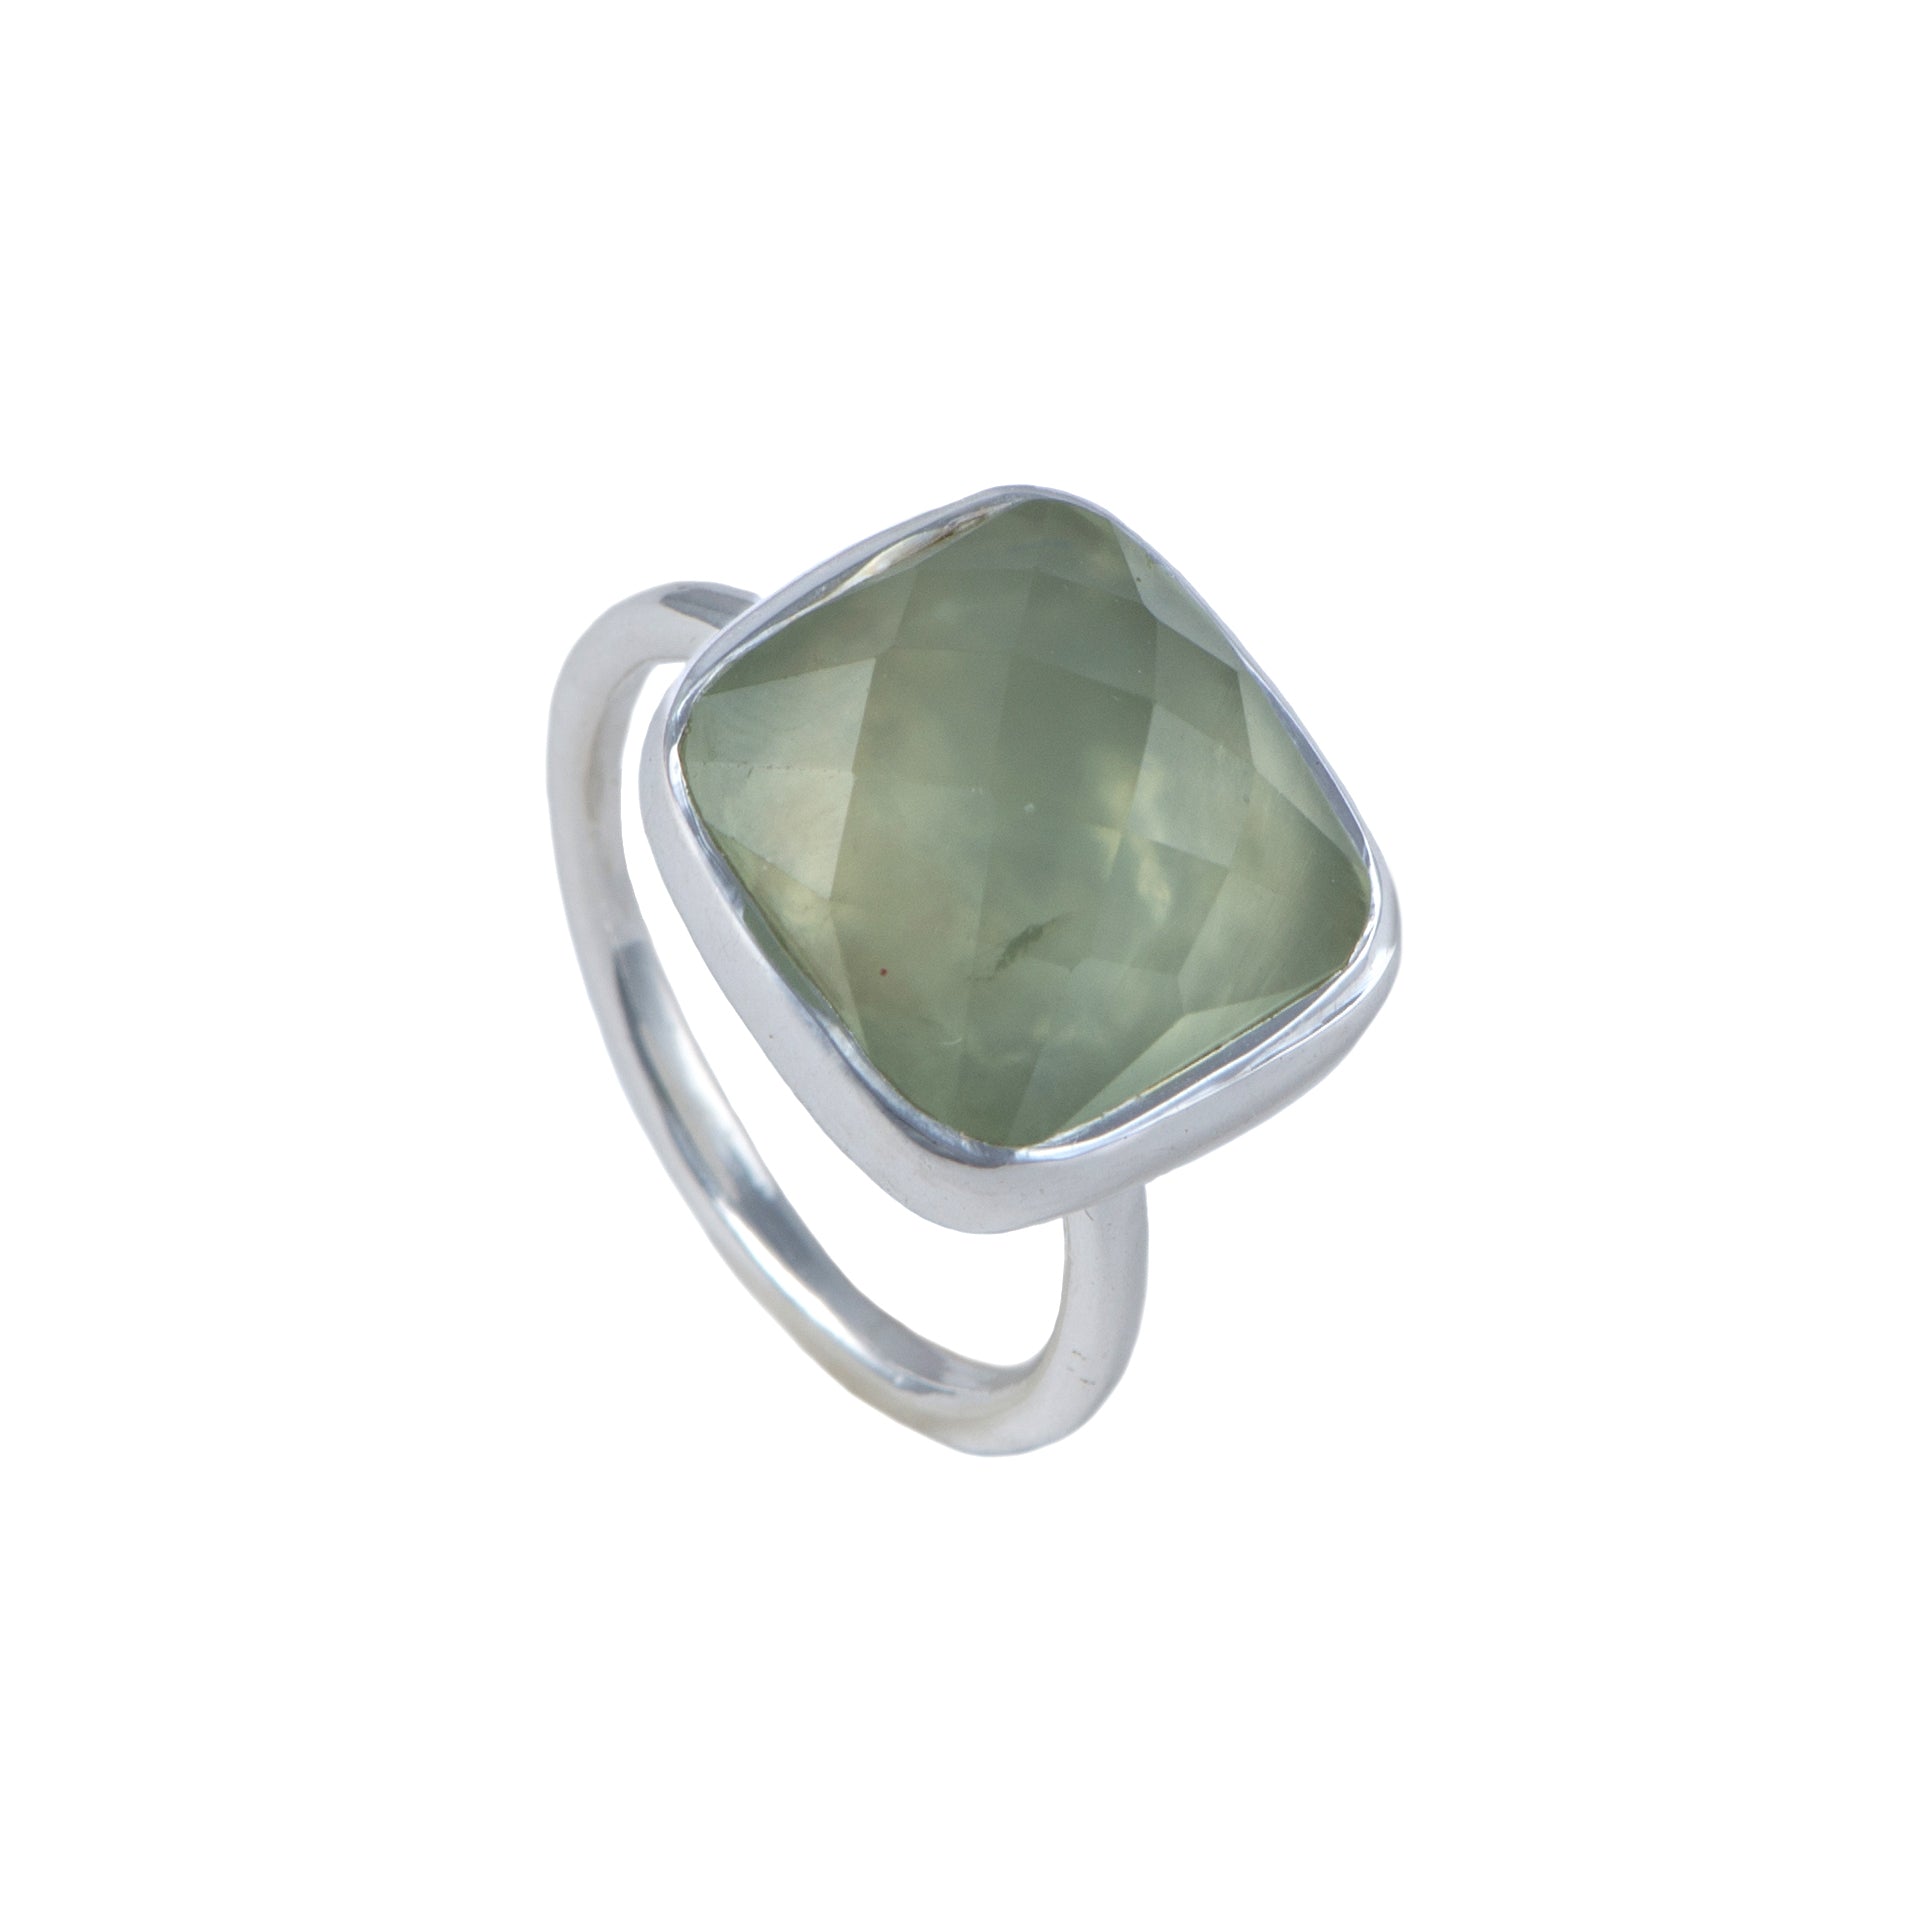 Silver Ring with Square Semiprecious Stone - Prehnite